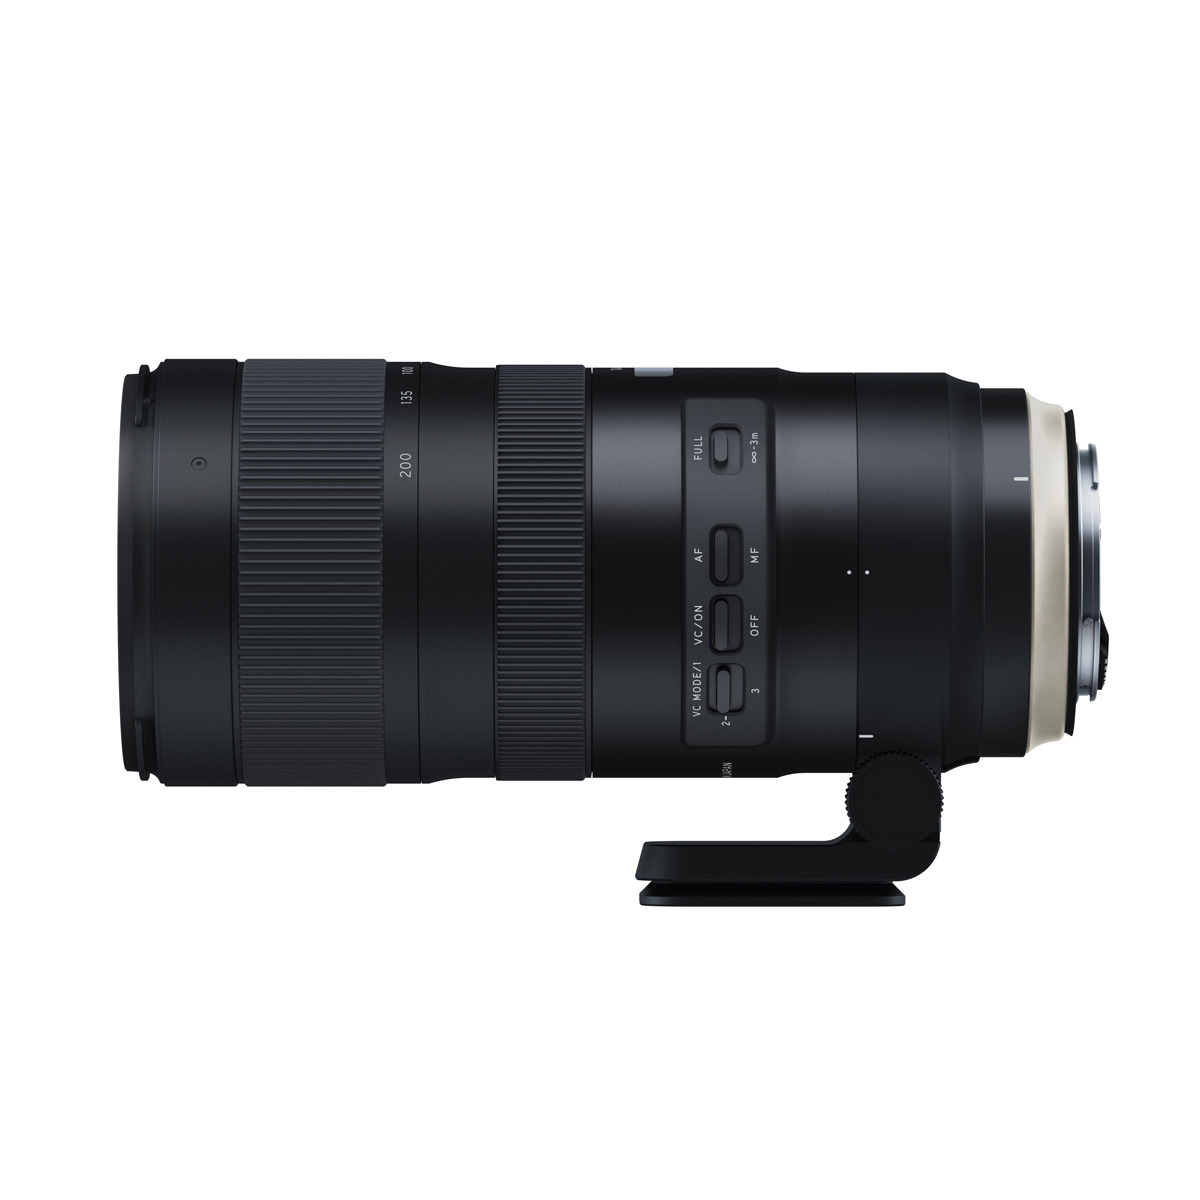 TAMRON A025E SP mm (Objektiv Di, EF-S-Mount, VC CANON G2 f/2.8 USD, - USD mm 200 70 Canon Schwarz) für 70-200MM